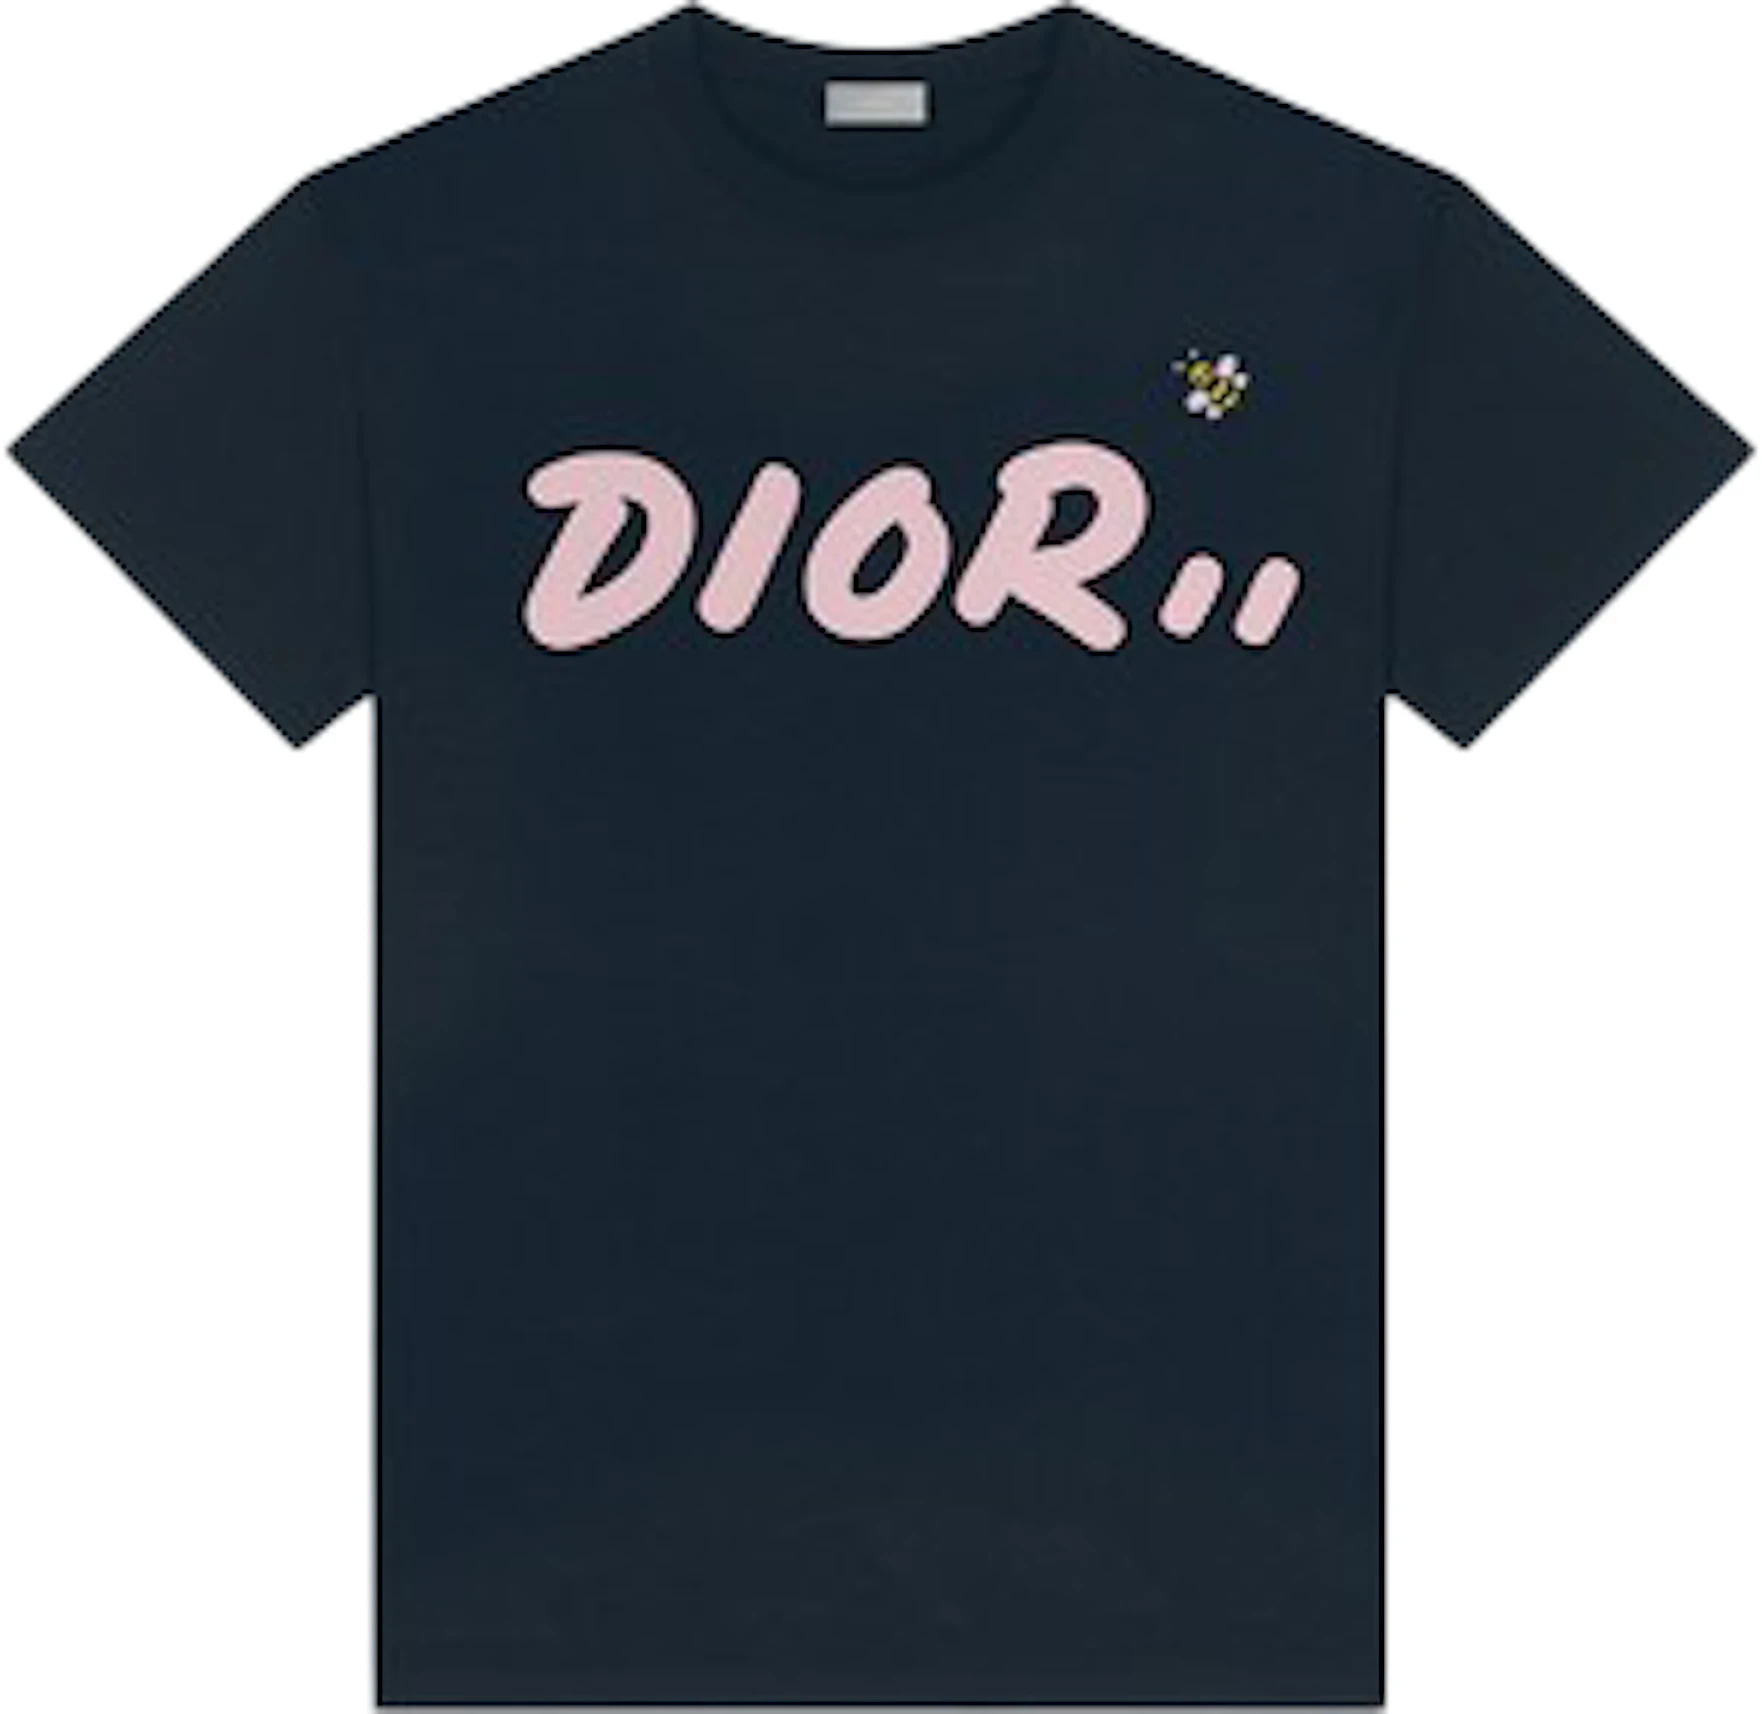 Dior Kaws Logo | studiosixsound.co.za